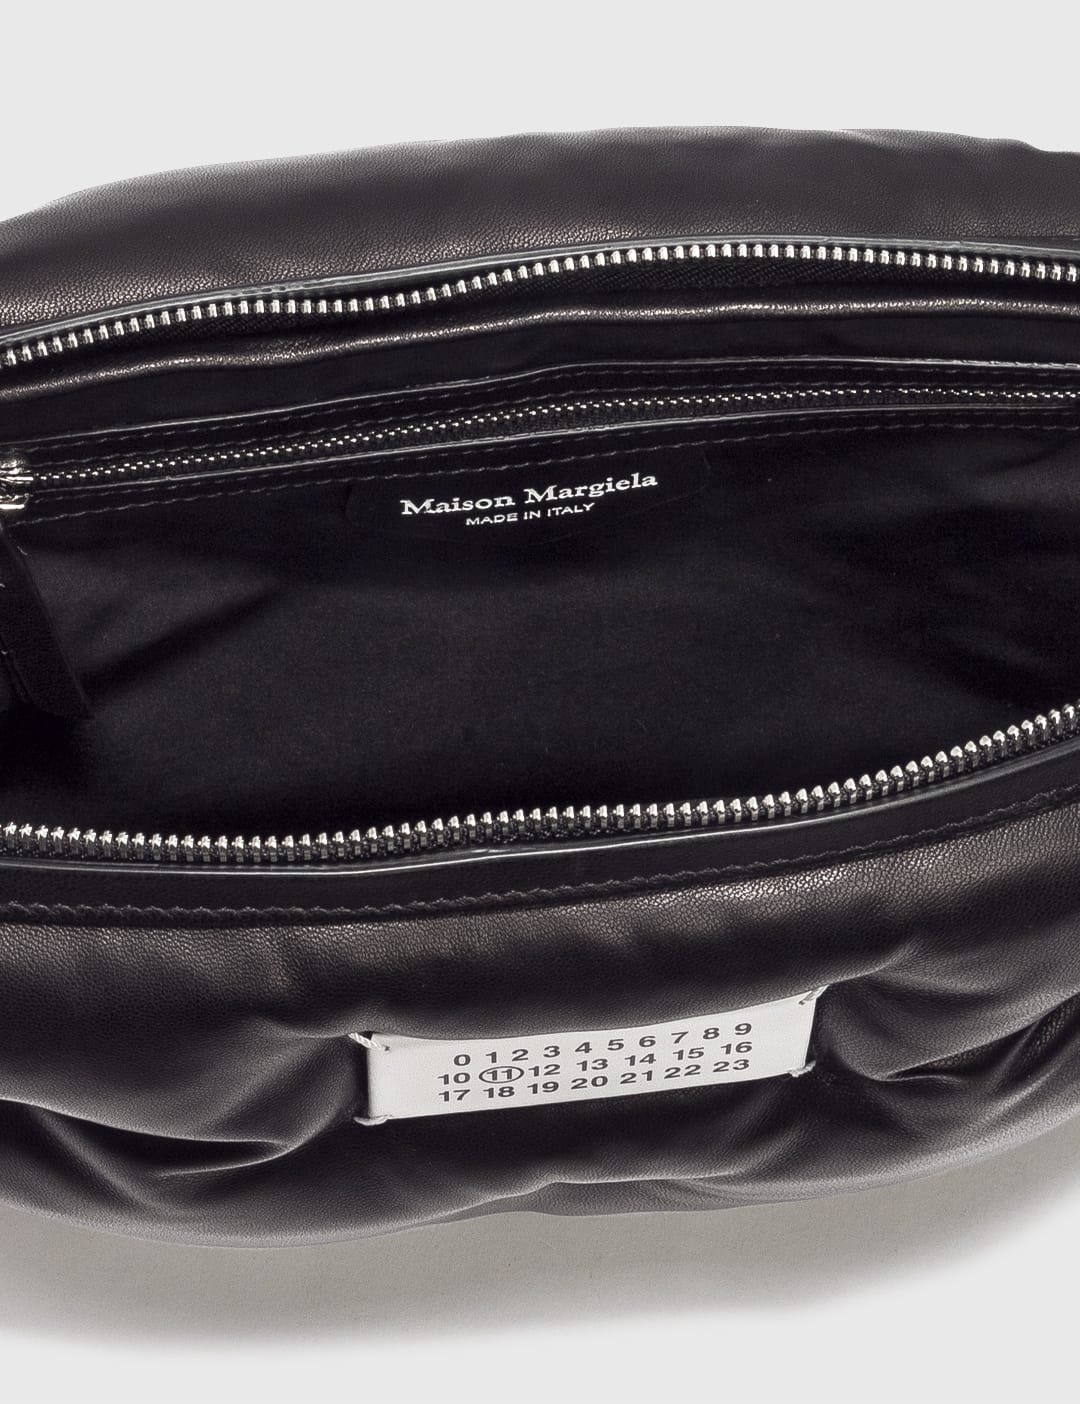 Maison Margiela - Glam Slam Crossbody Bag | HBX - Globally Curated 